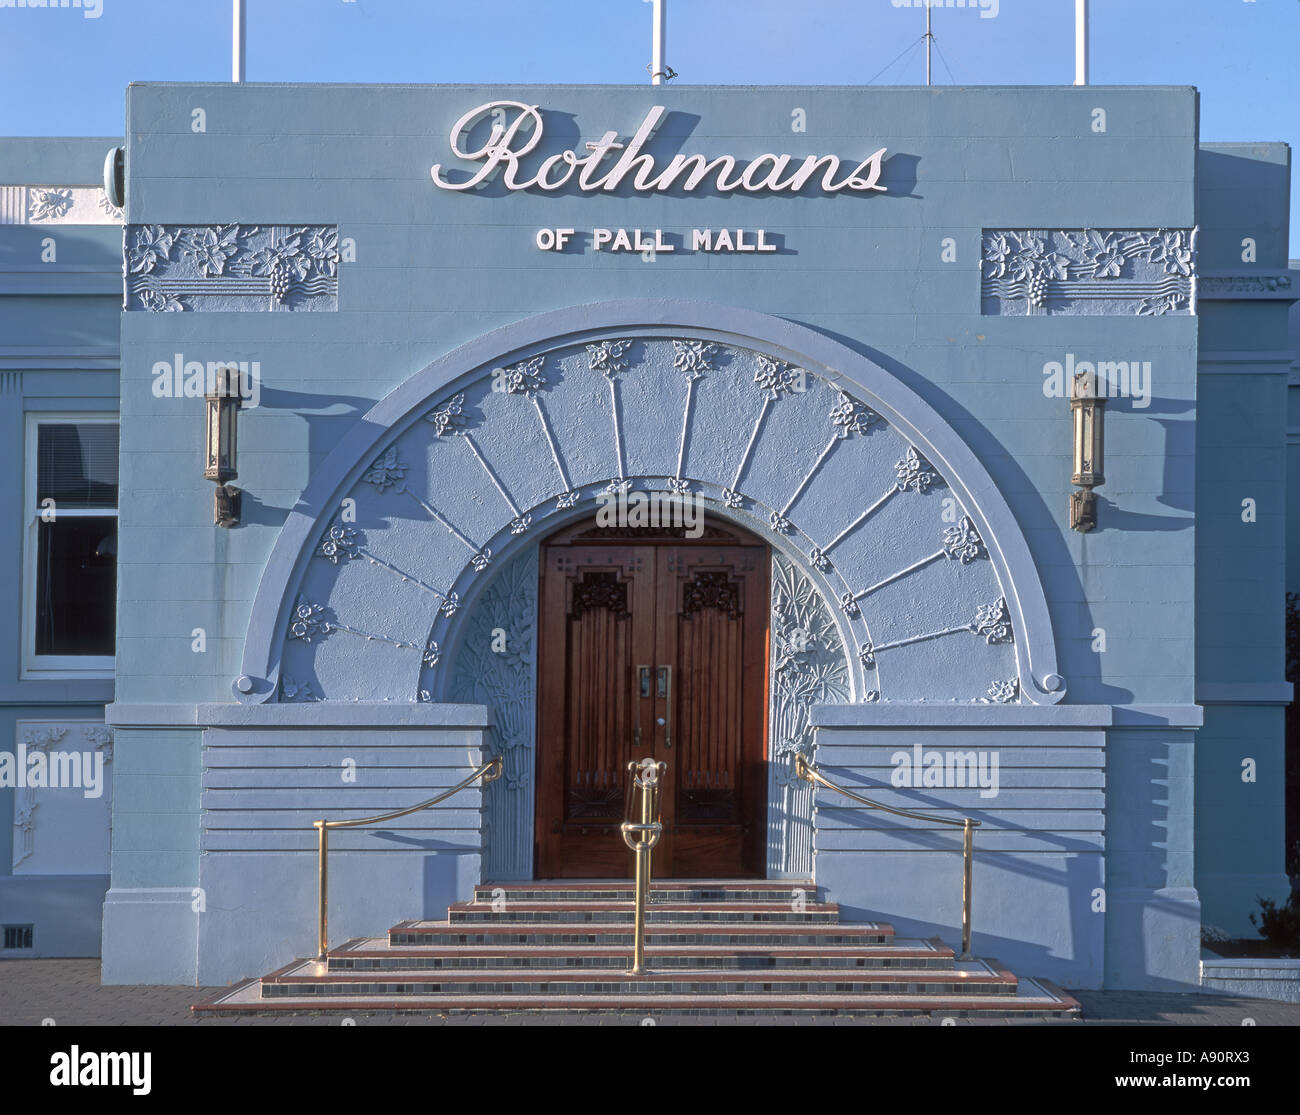 Nuova Zelanda Isola del Sud Napier edificio art deco Rothmans di Pall Mall ingresso fabbrica di tabacco Foto Stock